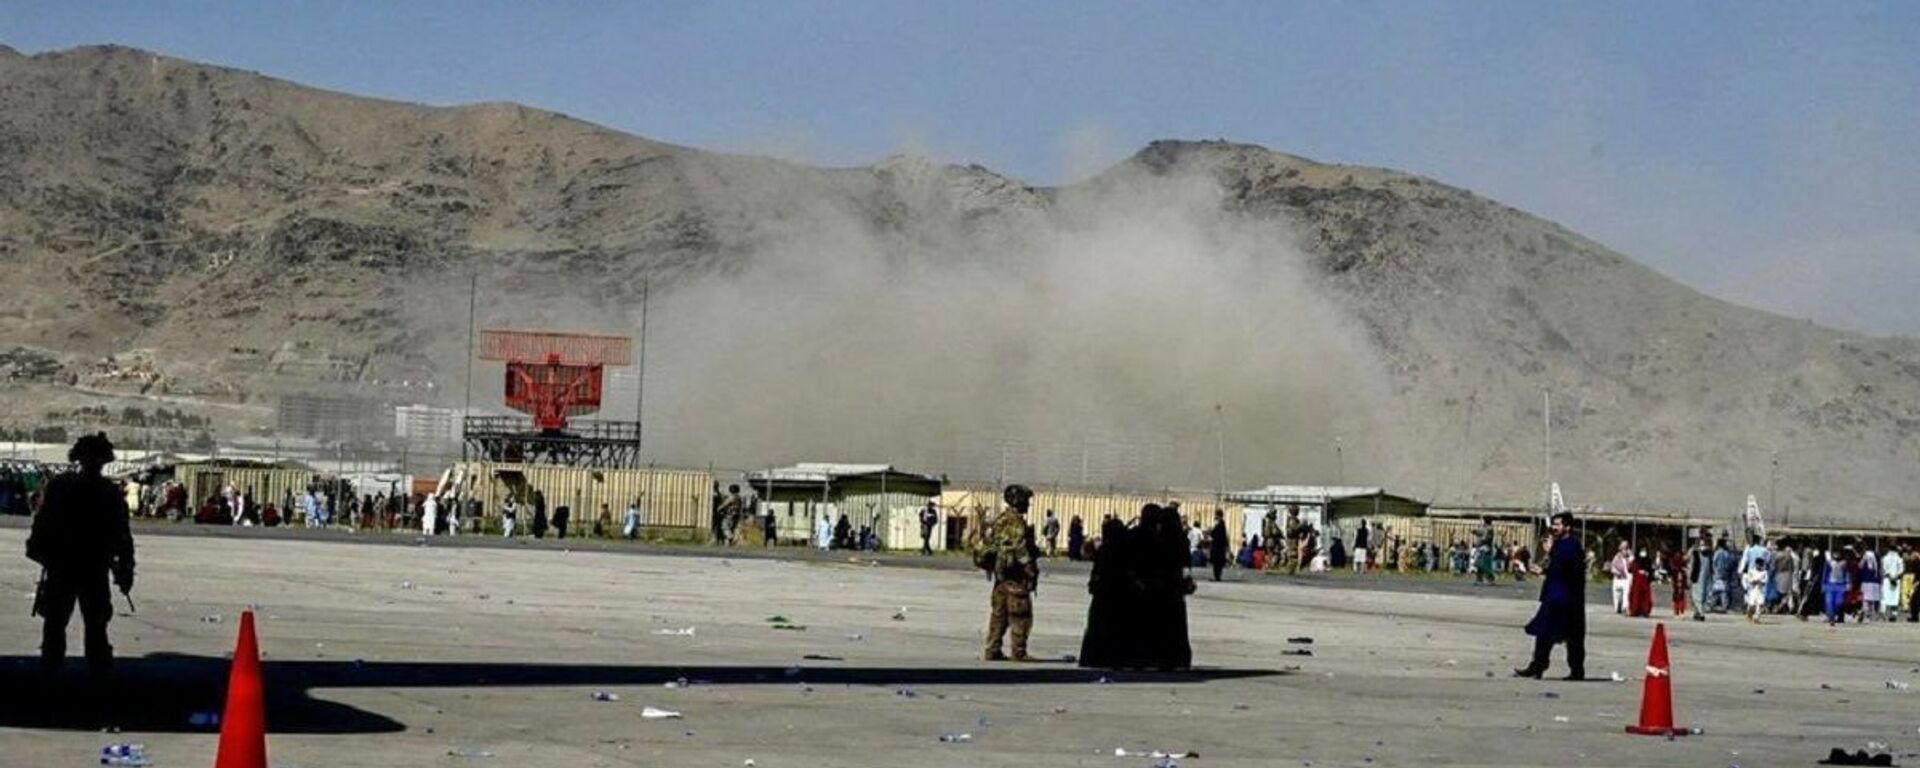 Vụ nổ ở gần sân bay Kabul - Sputnik Việt Nam, 1920, 15.11.2021